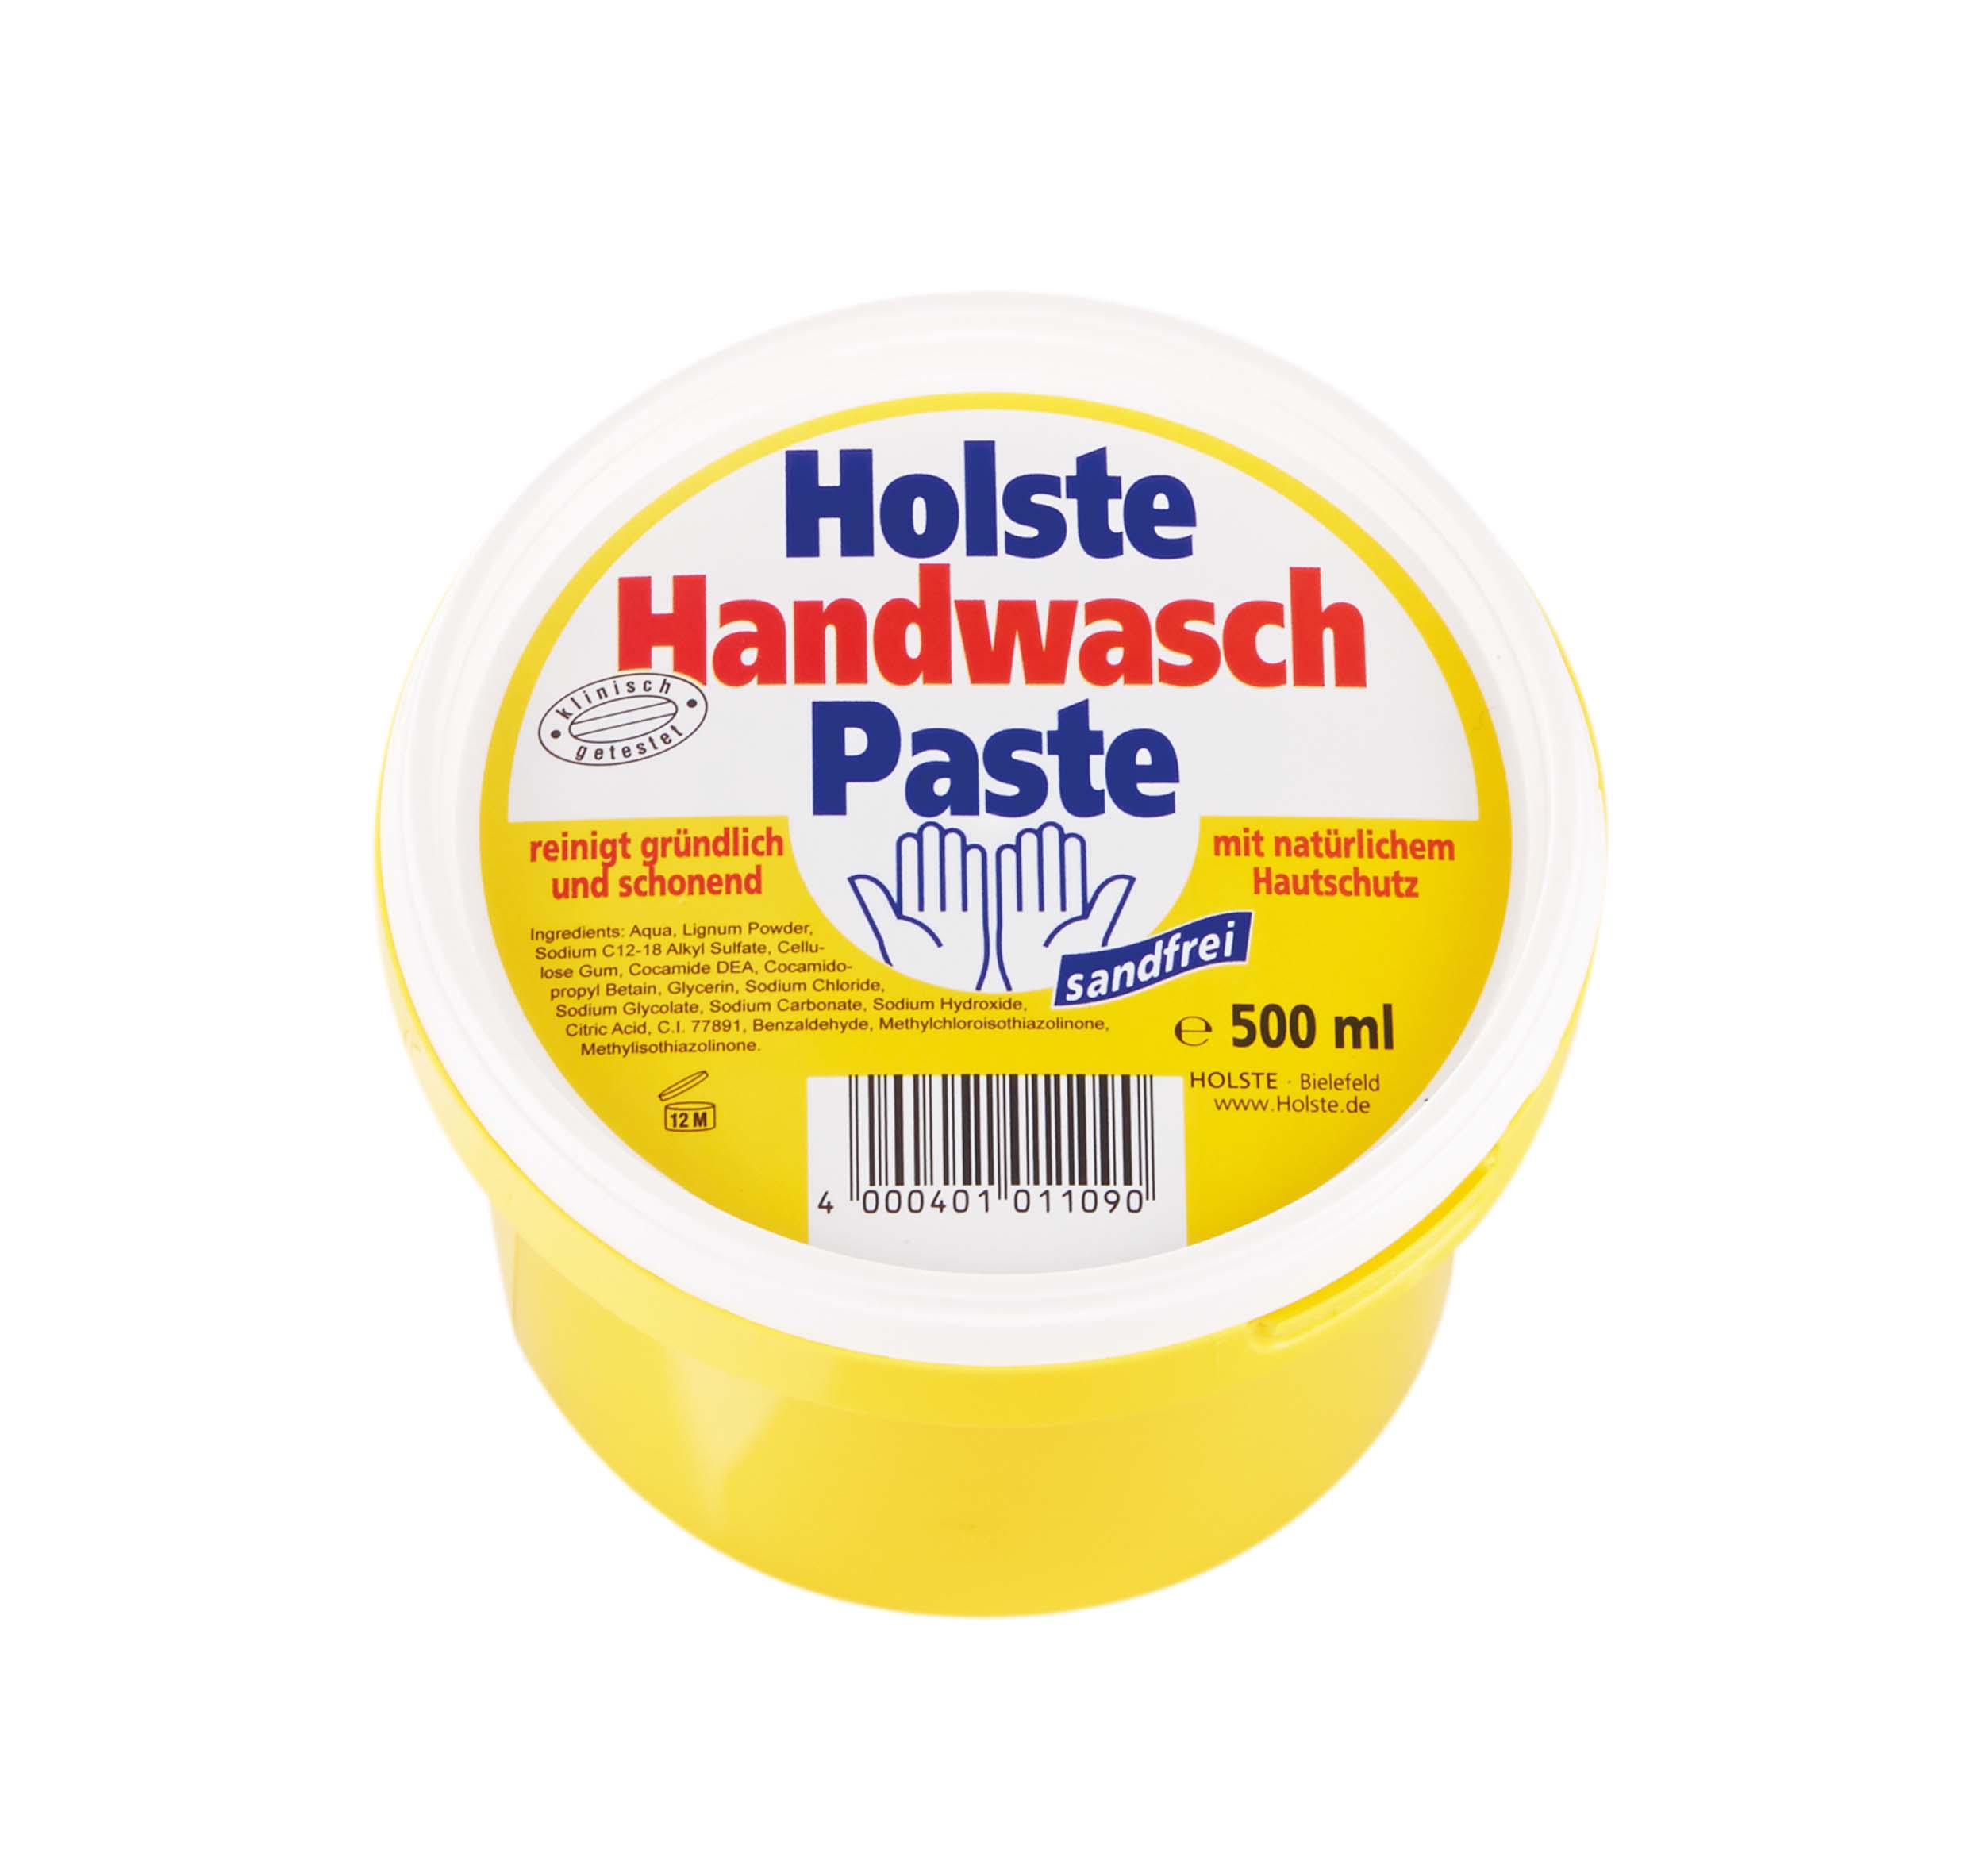 HOLSTE Handwasch Paste sandfrei 500 ml